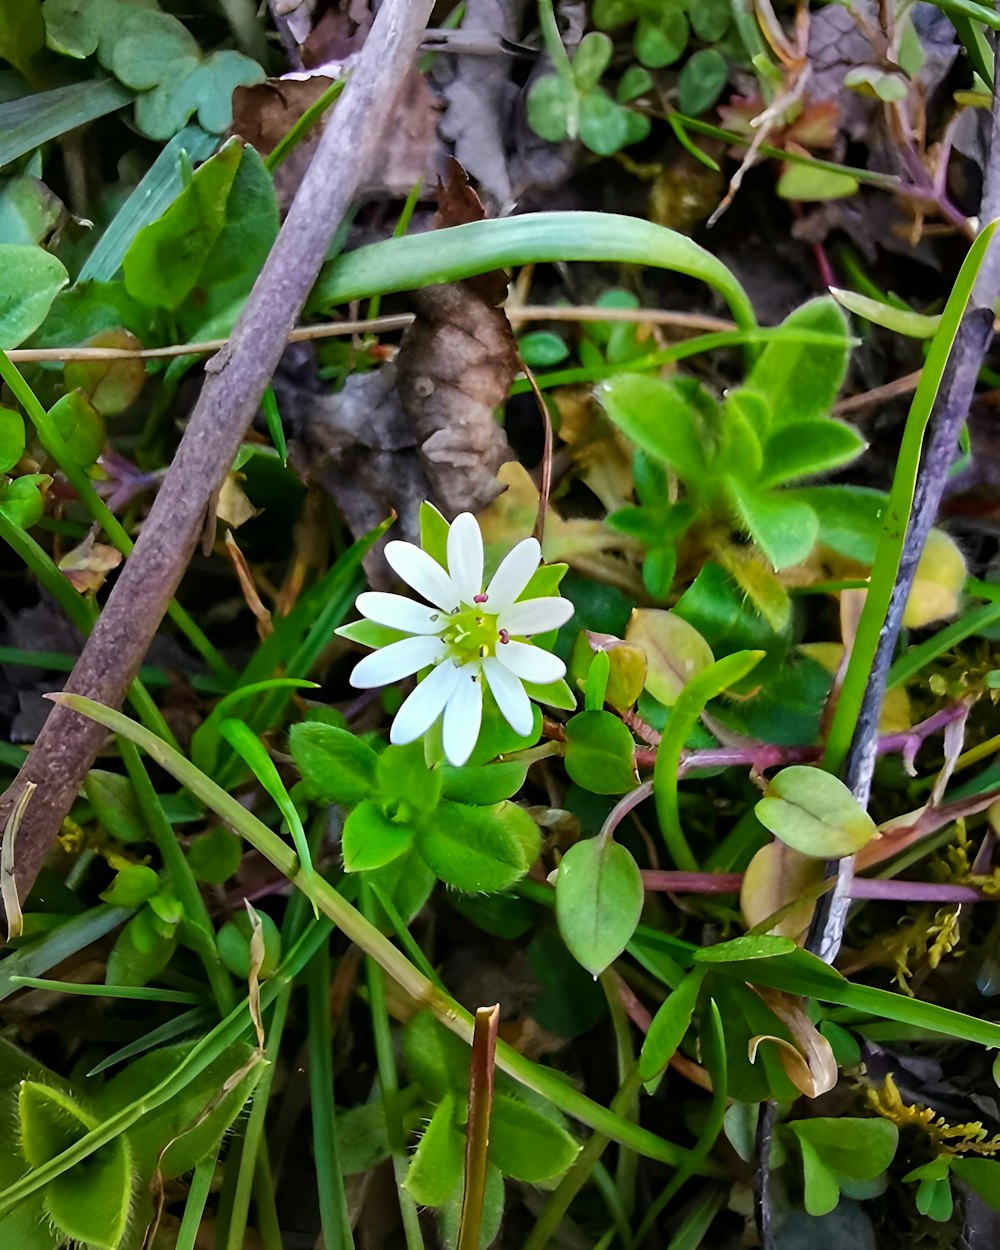 무성한 녹색 들판 위에 앉아있는 작은 흰색 꽃